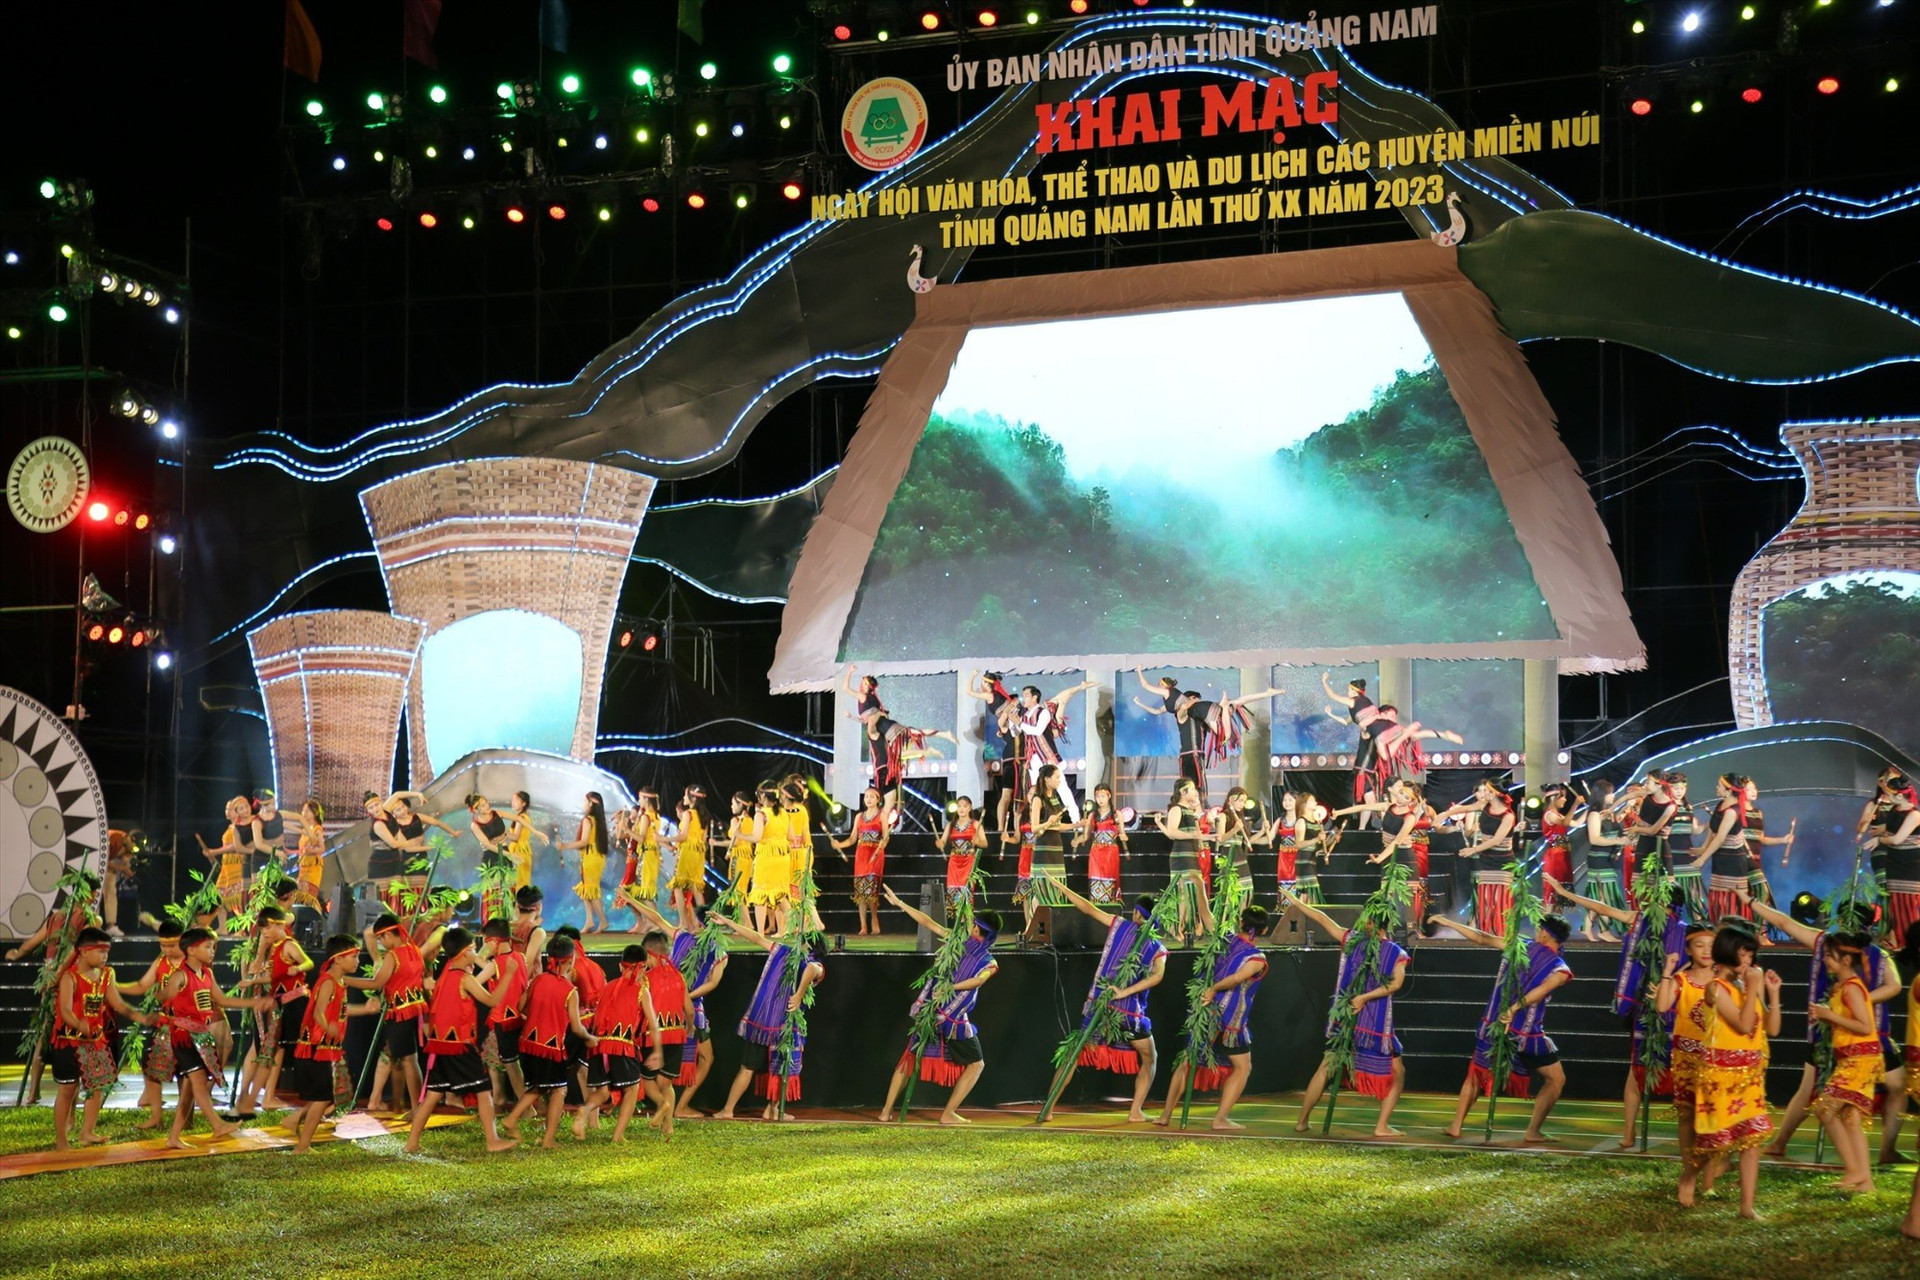 Chương trình nghệ thuật có sự tham gia trình diễn của 200 nghệ sĩ, diễn viên chuyên nghiệp và không chuyên đến từ Nhà hát Ca múa nhạc Quân đội, Trung tâm Văn hóa Quảng Nam và huyện Phước Sơn. Ảnh: H.Đ.G